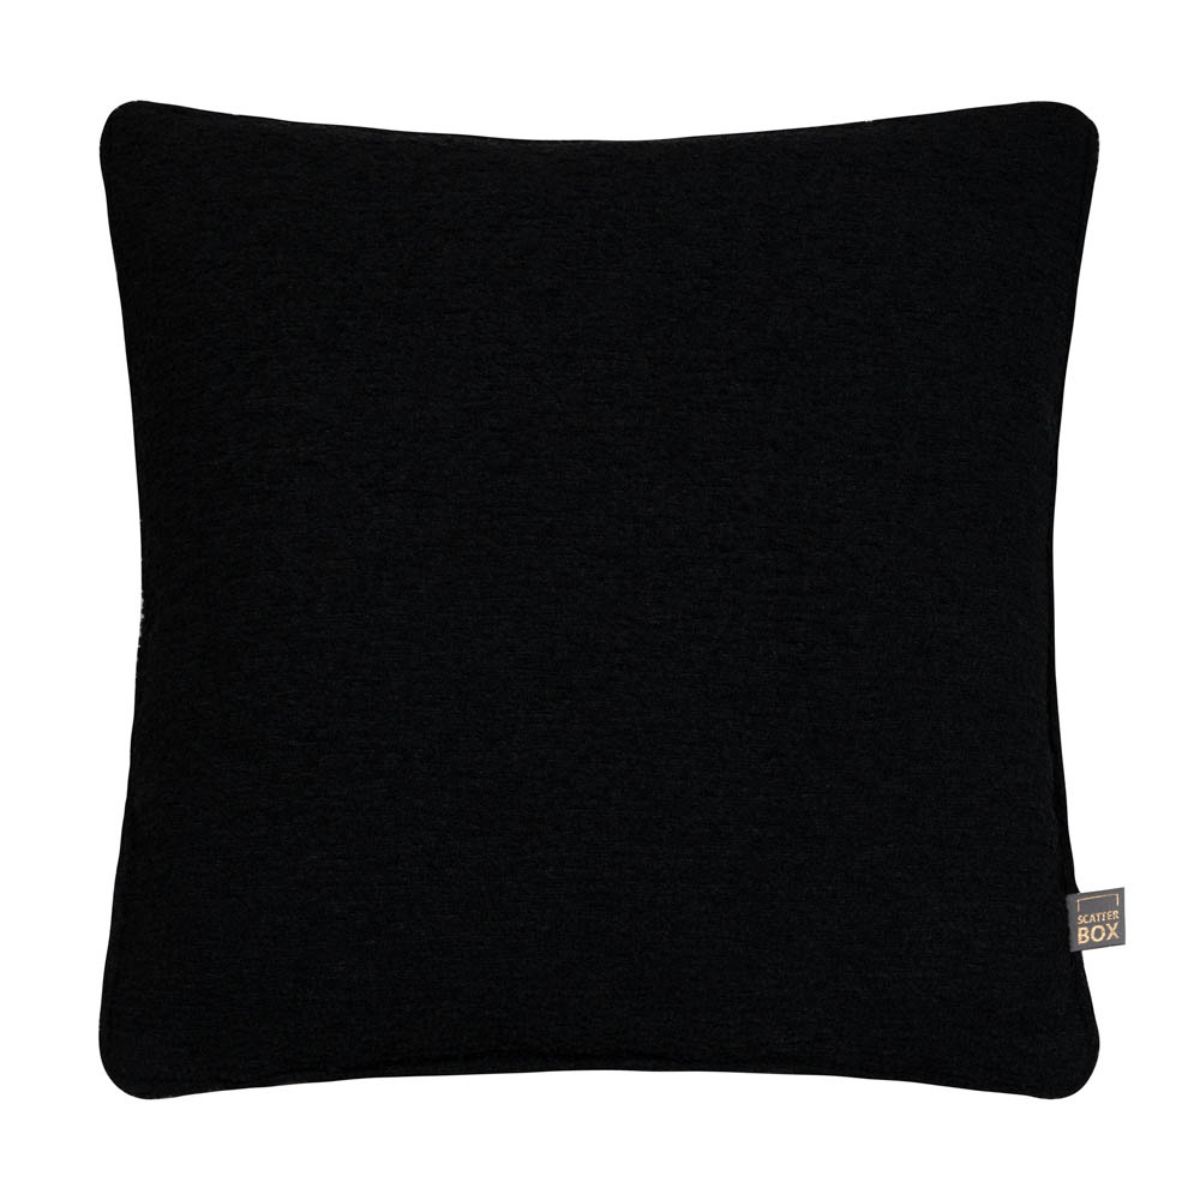 Cora Textured Cushion Black - 1